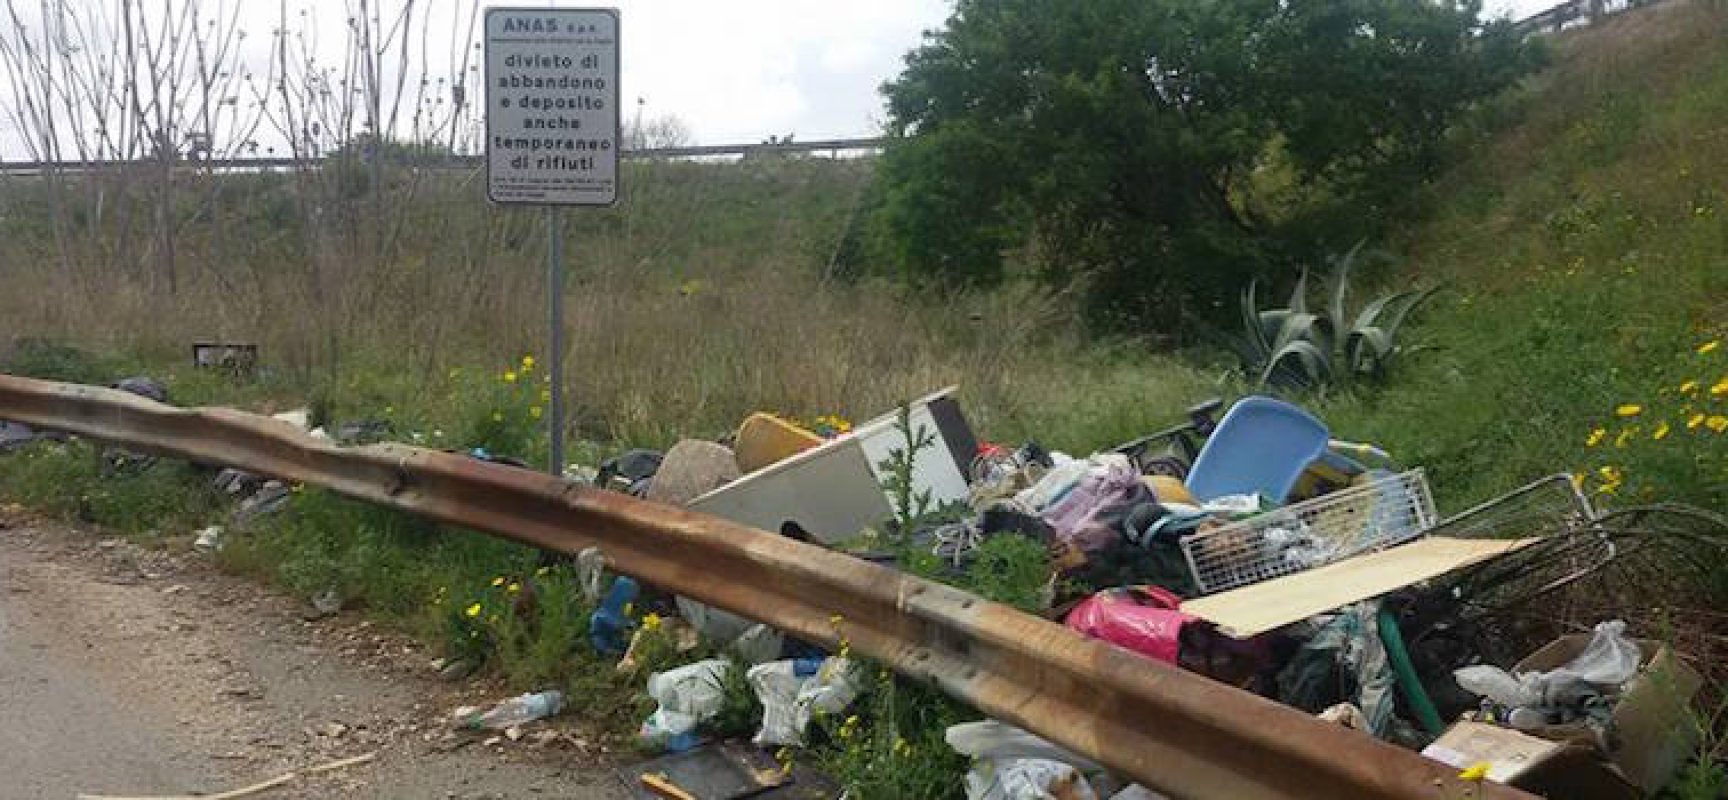 Abbandono indiscriminato rifiuti, Mauro Sasso: “Nell’agro circa cento siti con immondizia” / FOTO